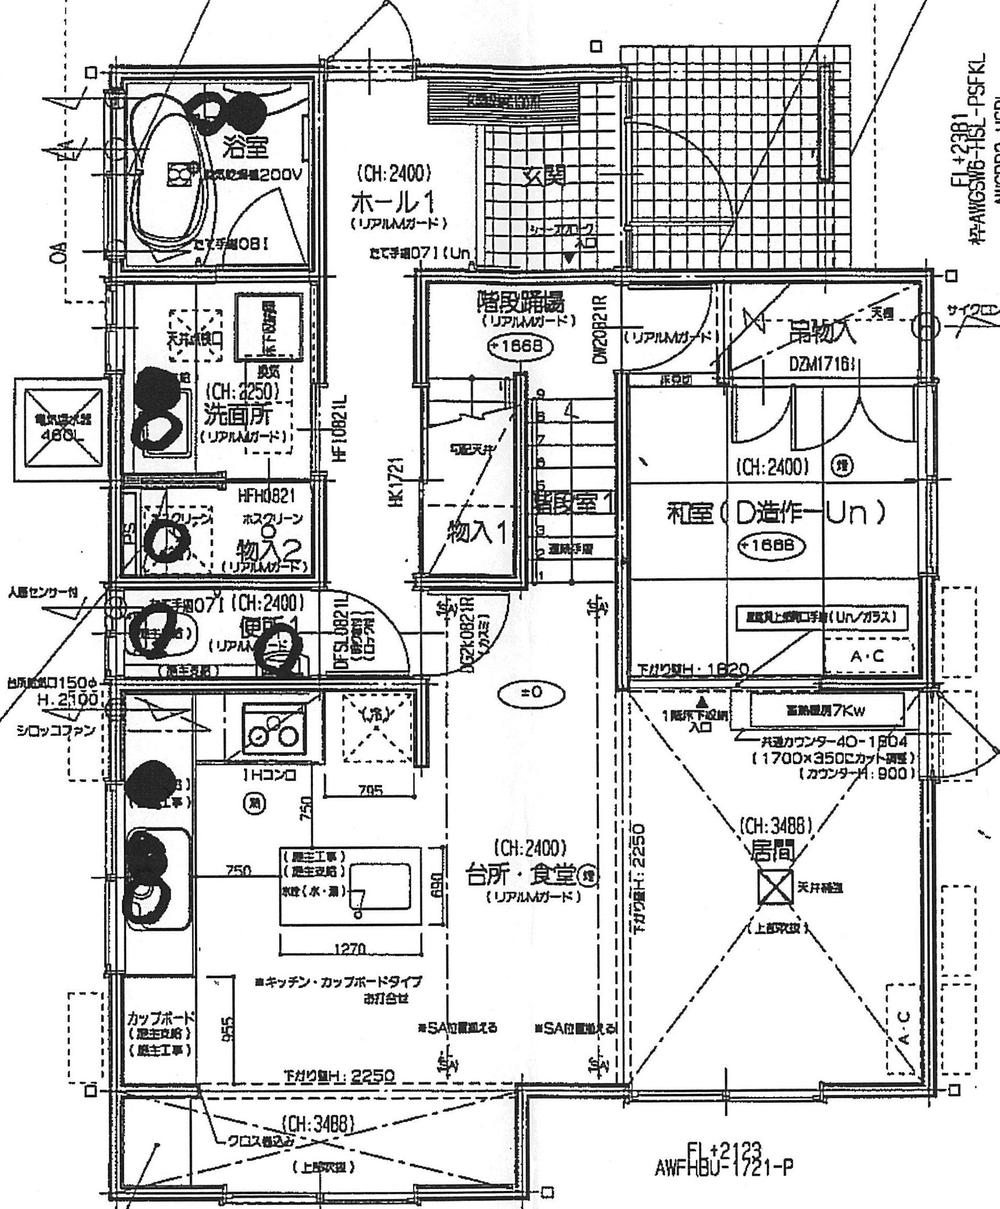 Floor plan. 37,200,000 yen, 3LDK, Land area 200.93 sq m , Building area 117.58 sq m 1 floor